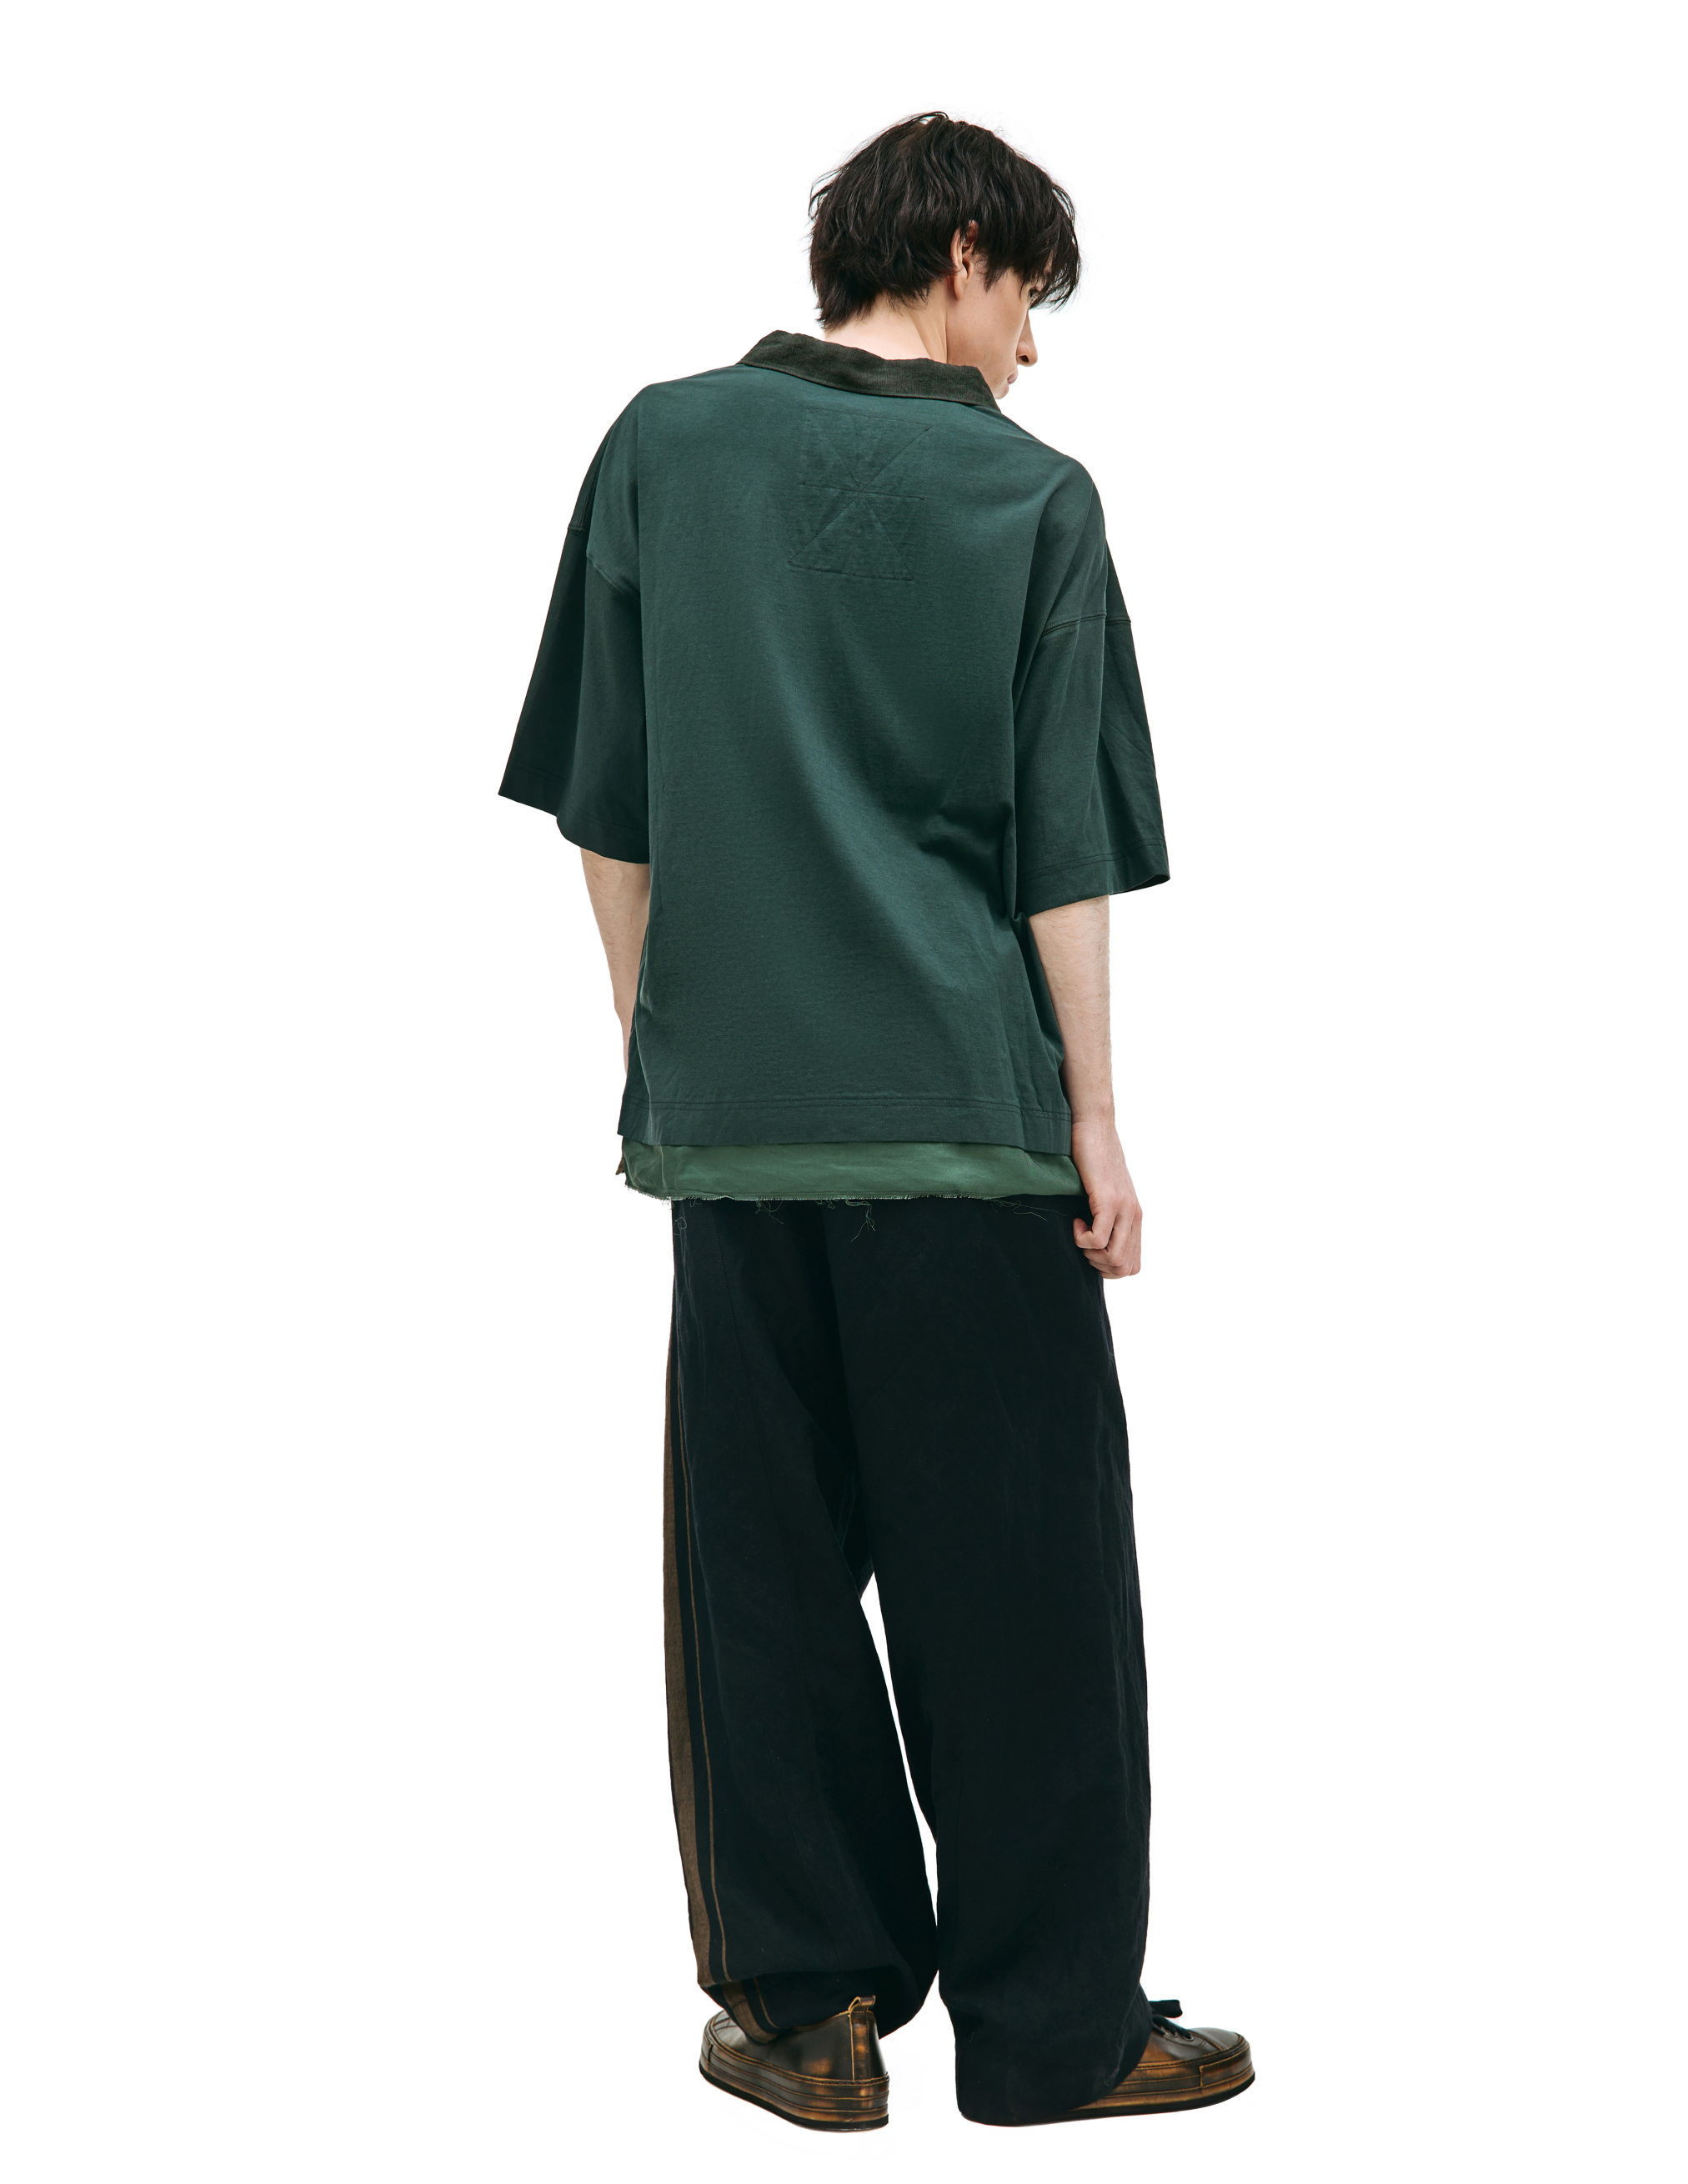 Комбинированная футболка с воротником-поло Ziggy Chen 0M2310211, размер 48;50;52 - фото 3